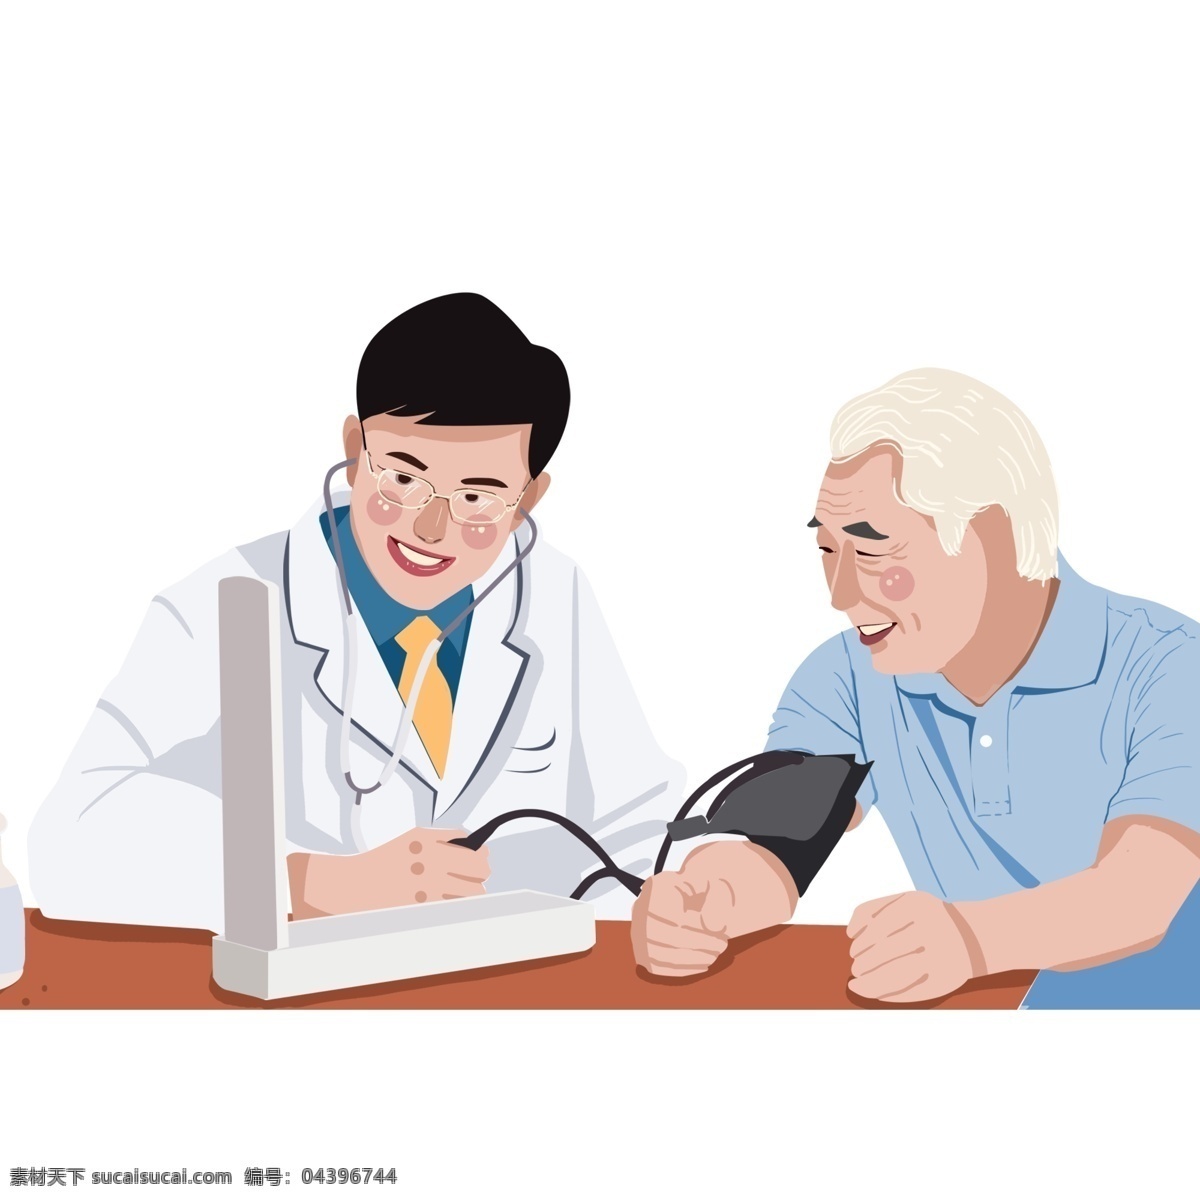 卡通 手绘 医生 老人 量 血压 量血压 插画 医疗场景